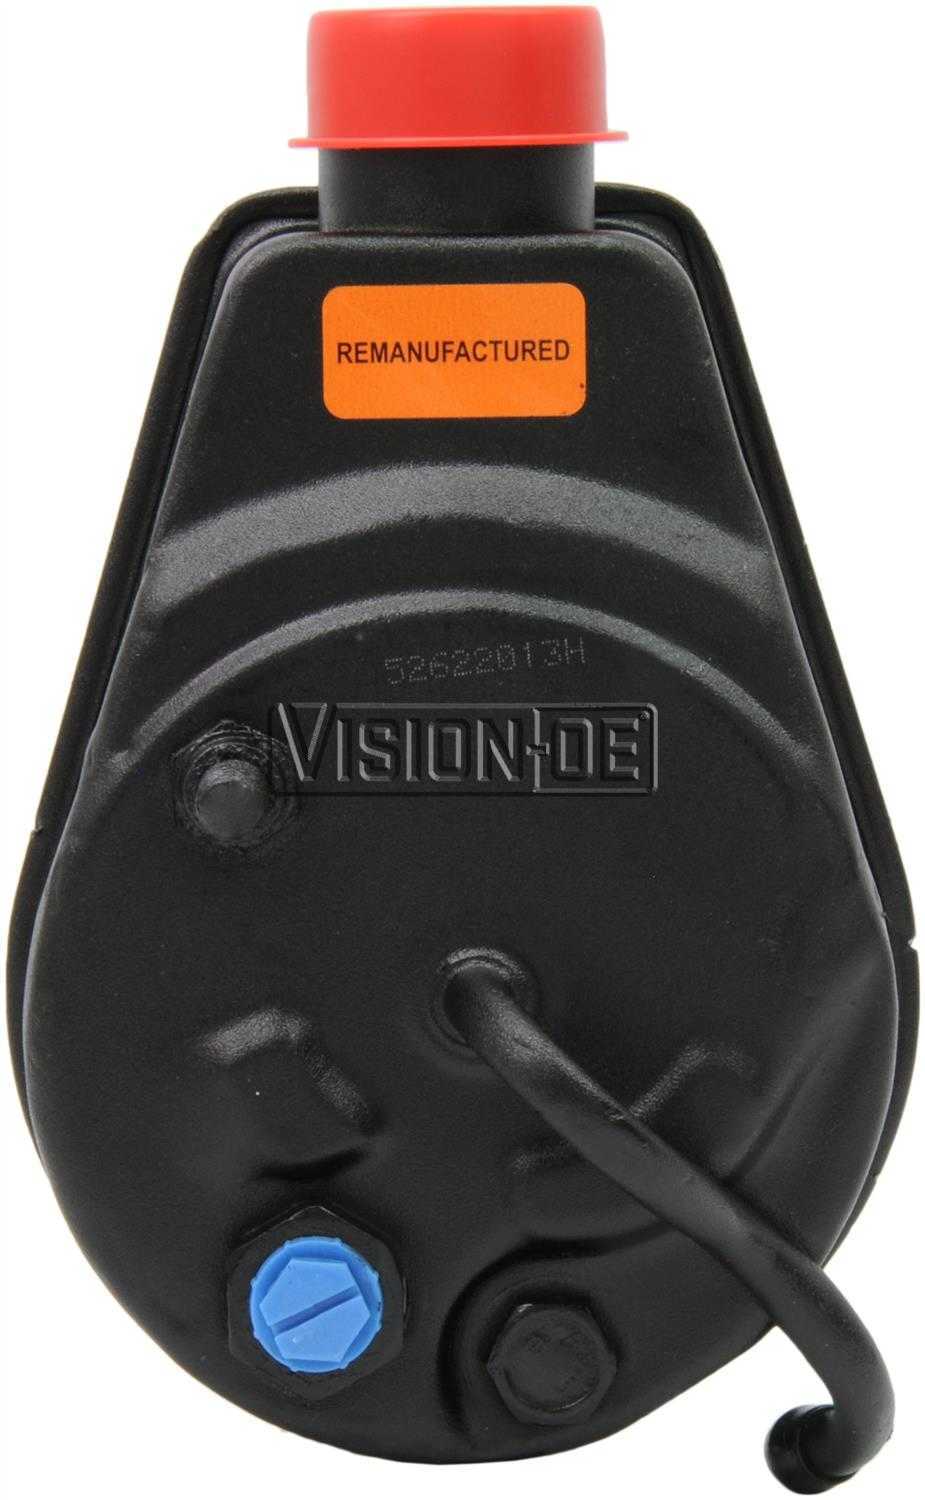 VISION-OE - Reman Power Steering Pump - VOE 731-2161